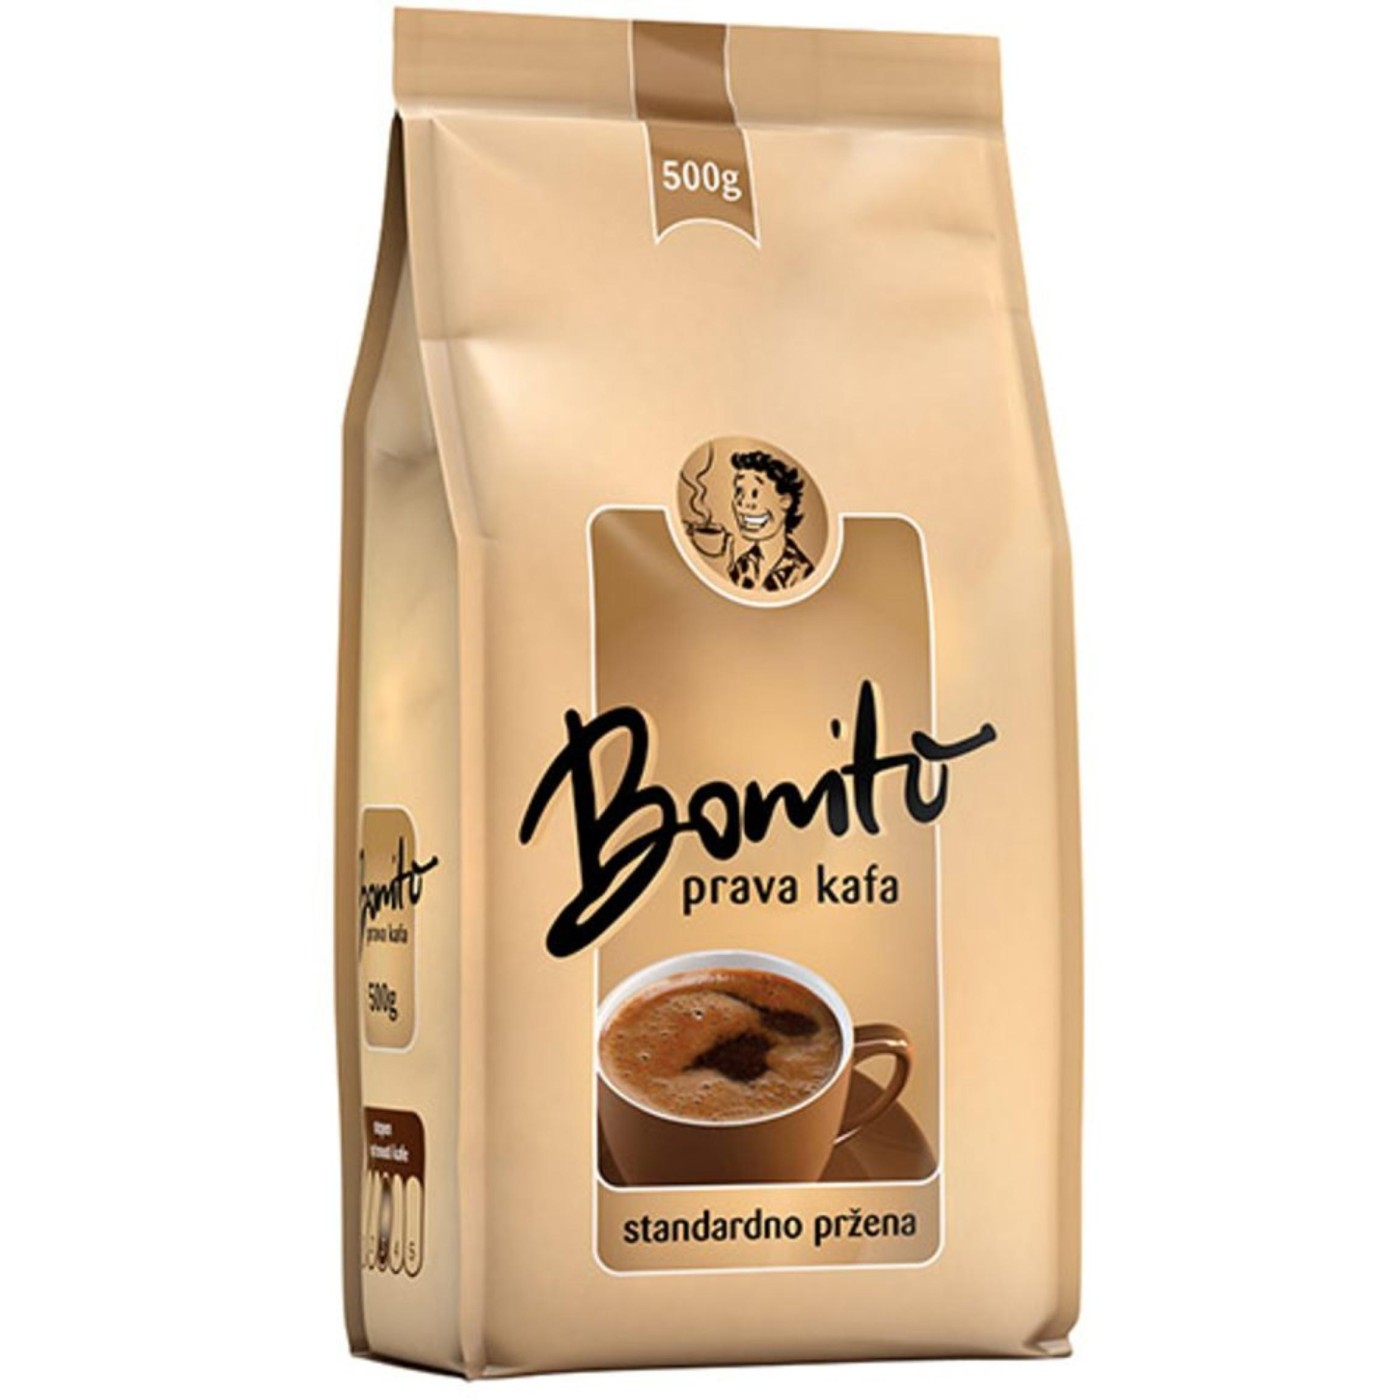 Bonito kafa 500g - Svetlo Pržena